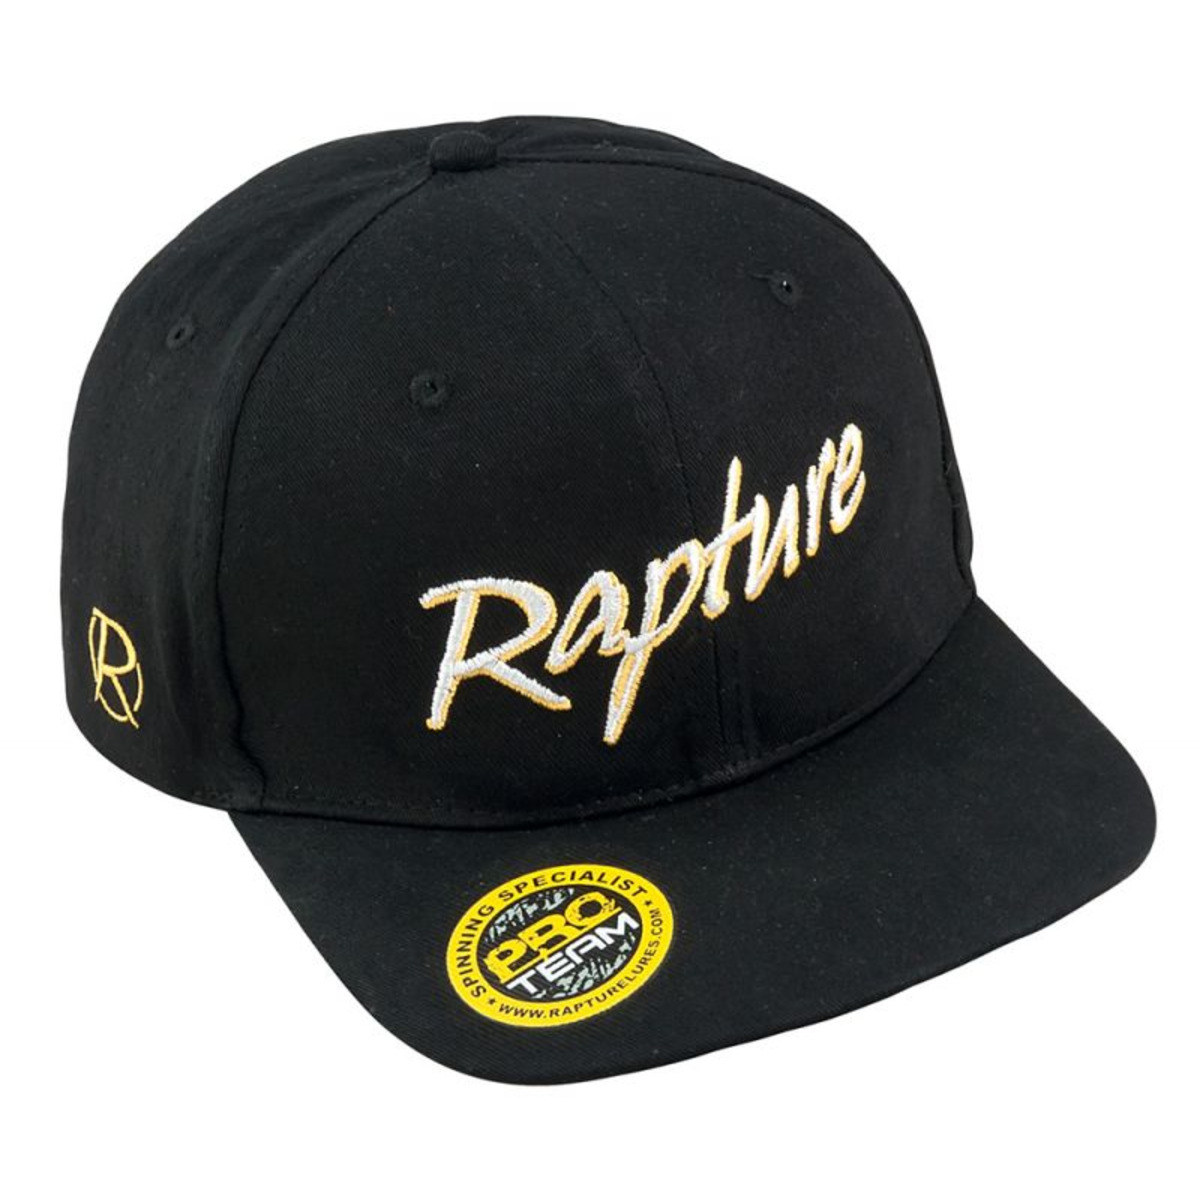 Rapture Pro Team Caps - Flat Brim